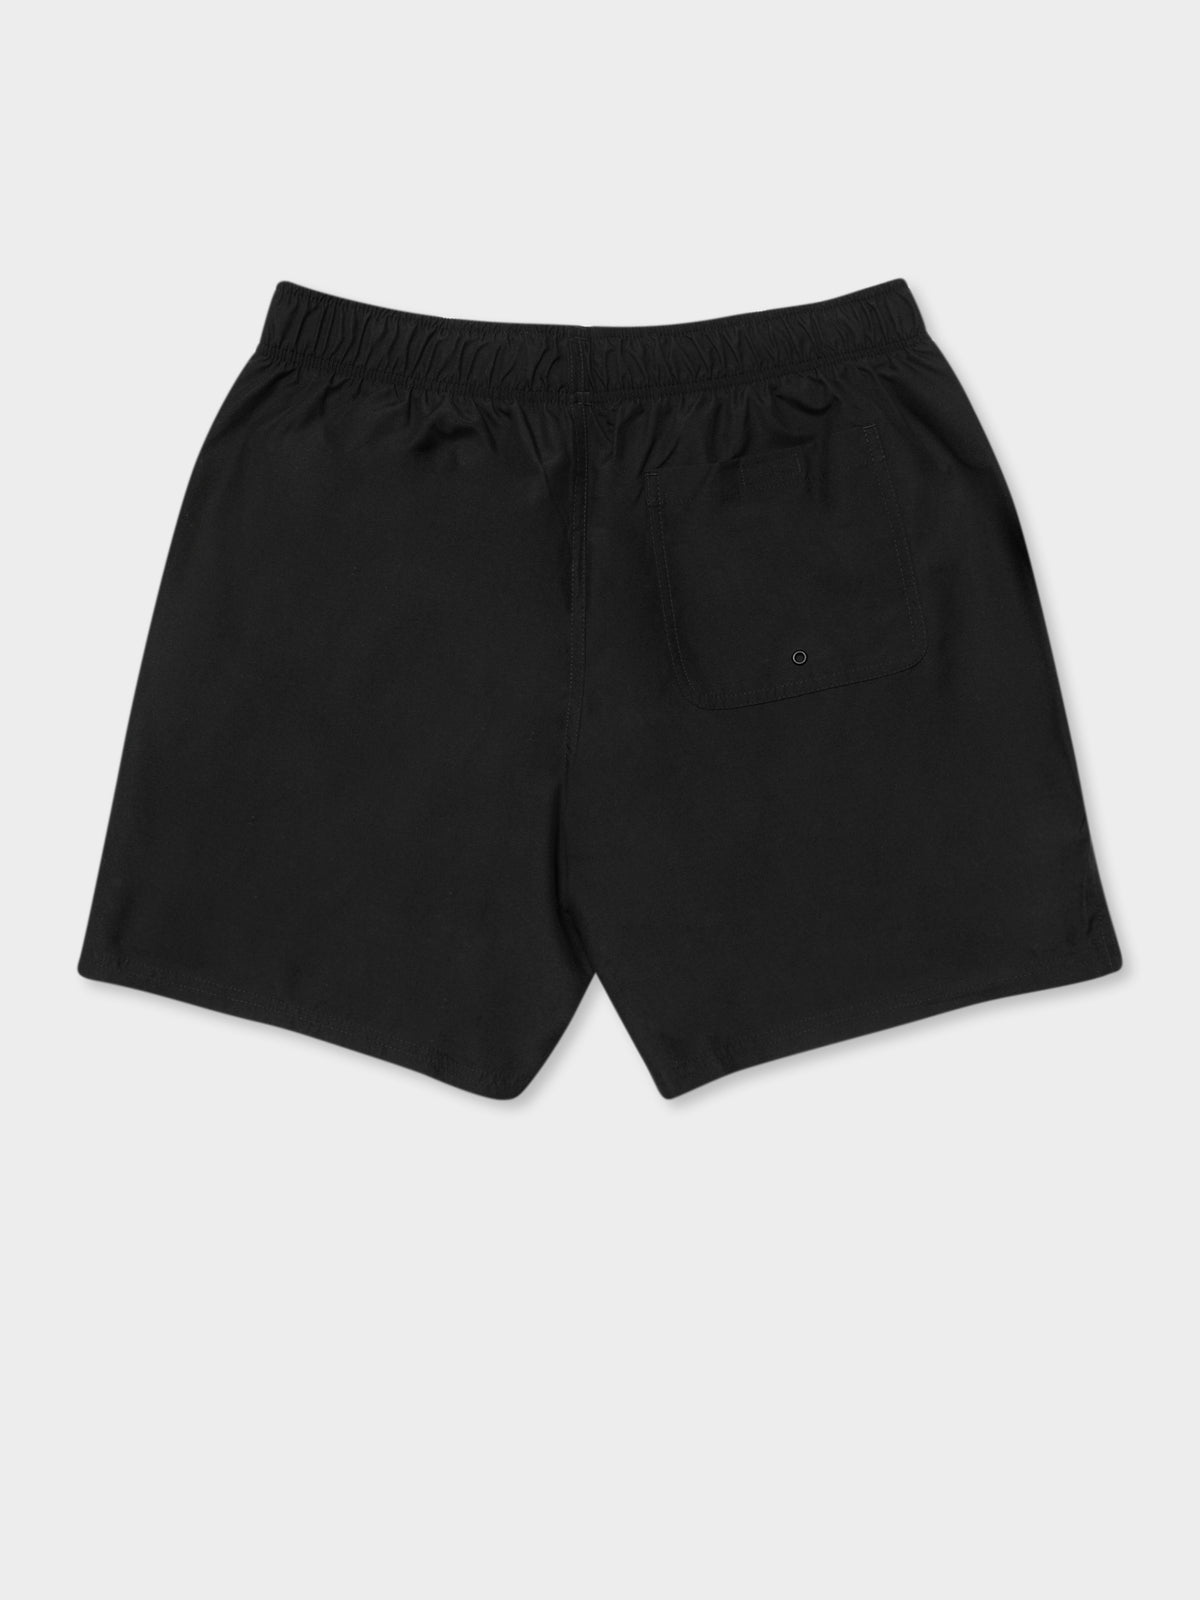 Essential Swim Short in Black